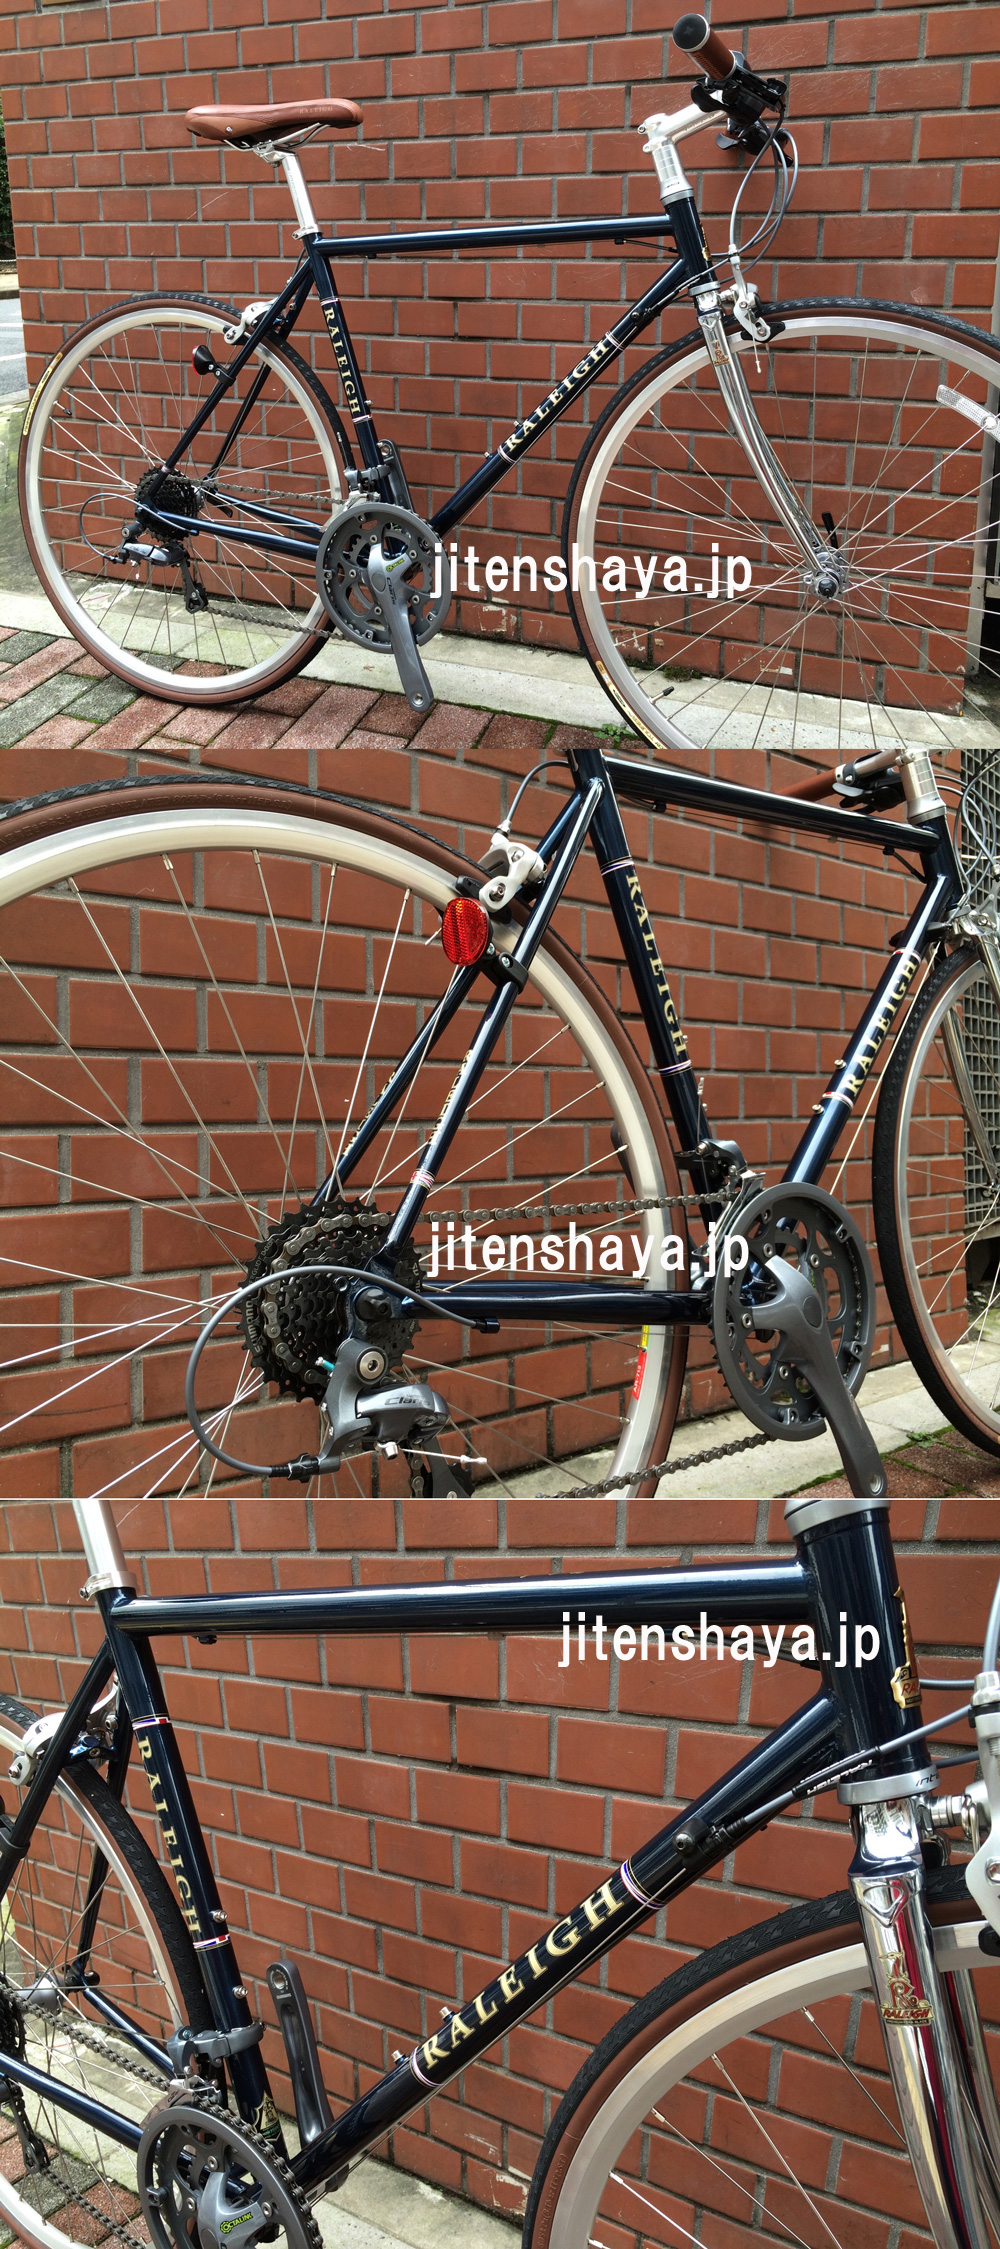 ラレー フラットバーロード RFC(ラドフォードクラシック) 2017年モデル 東京・銀座の自転車屋・東洋物産輪業の商品案内